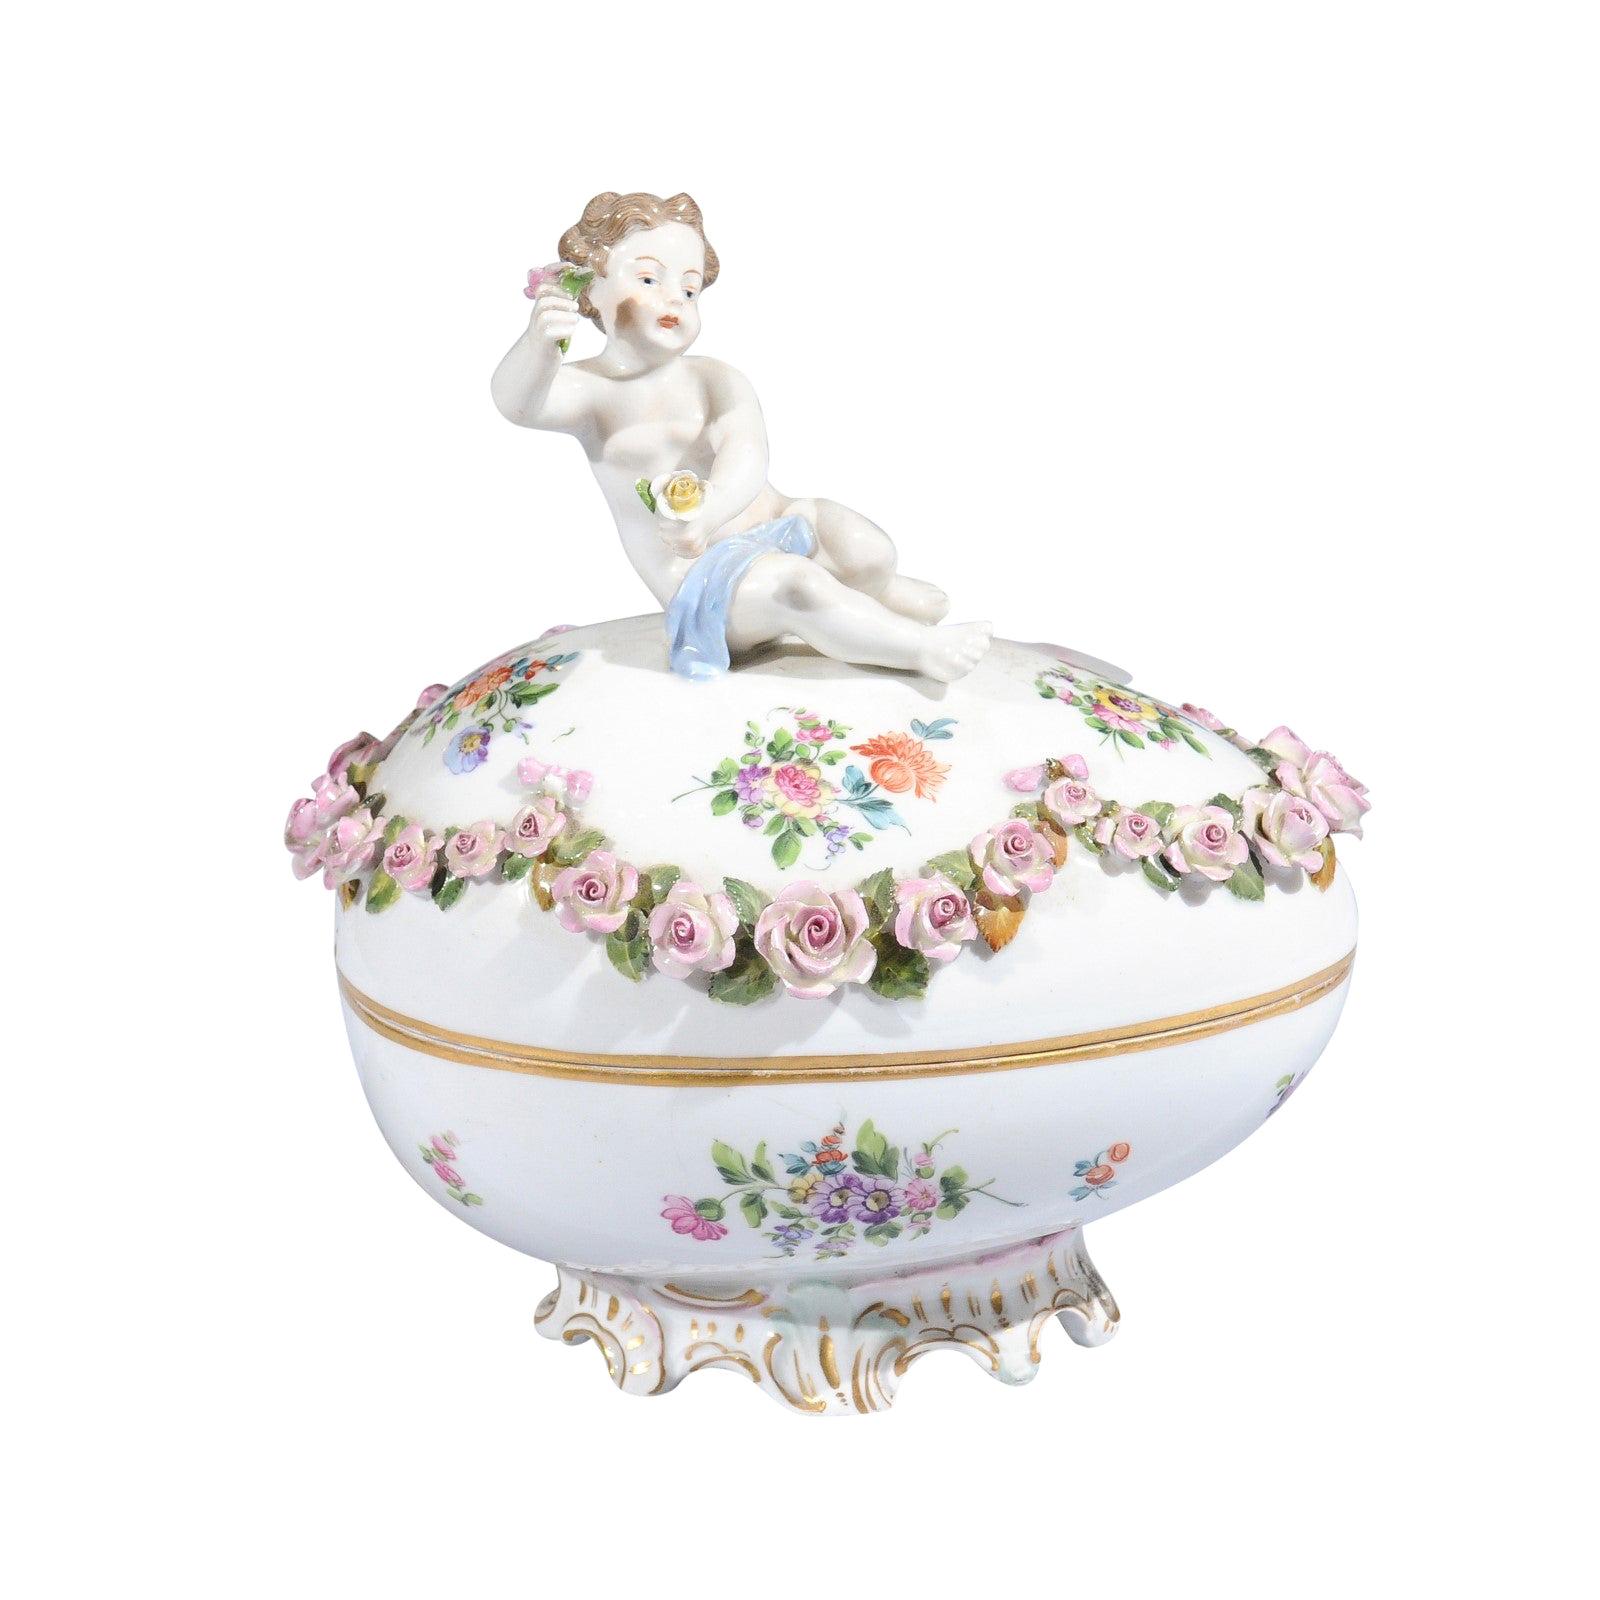 Französisches Sèvres-Porzellan-Ei des 19. Jahrhunderts mit Putte und Girlande aus rosa Rosen